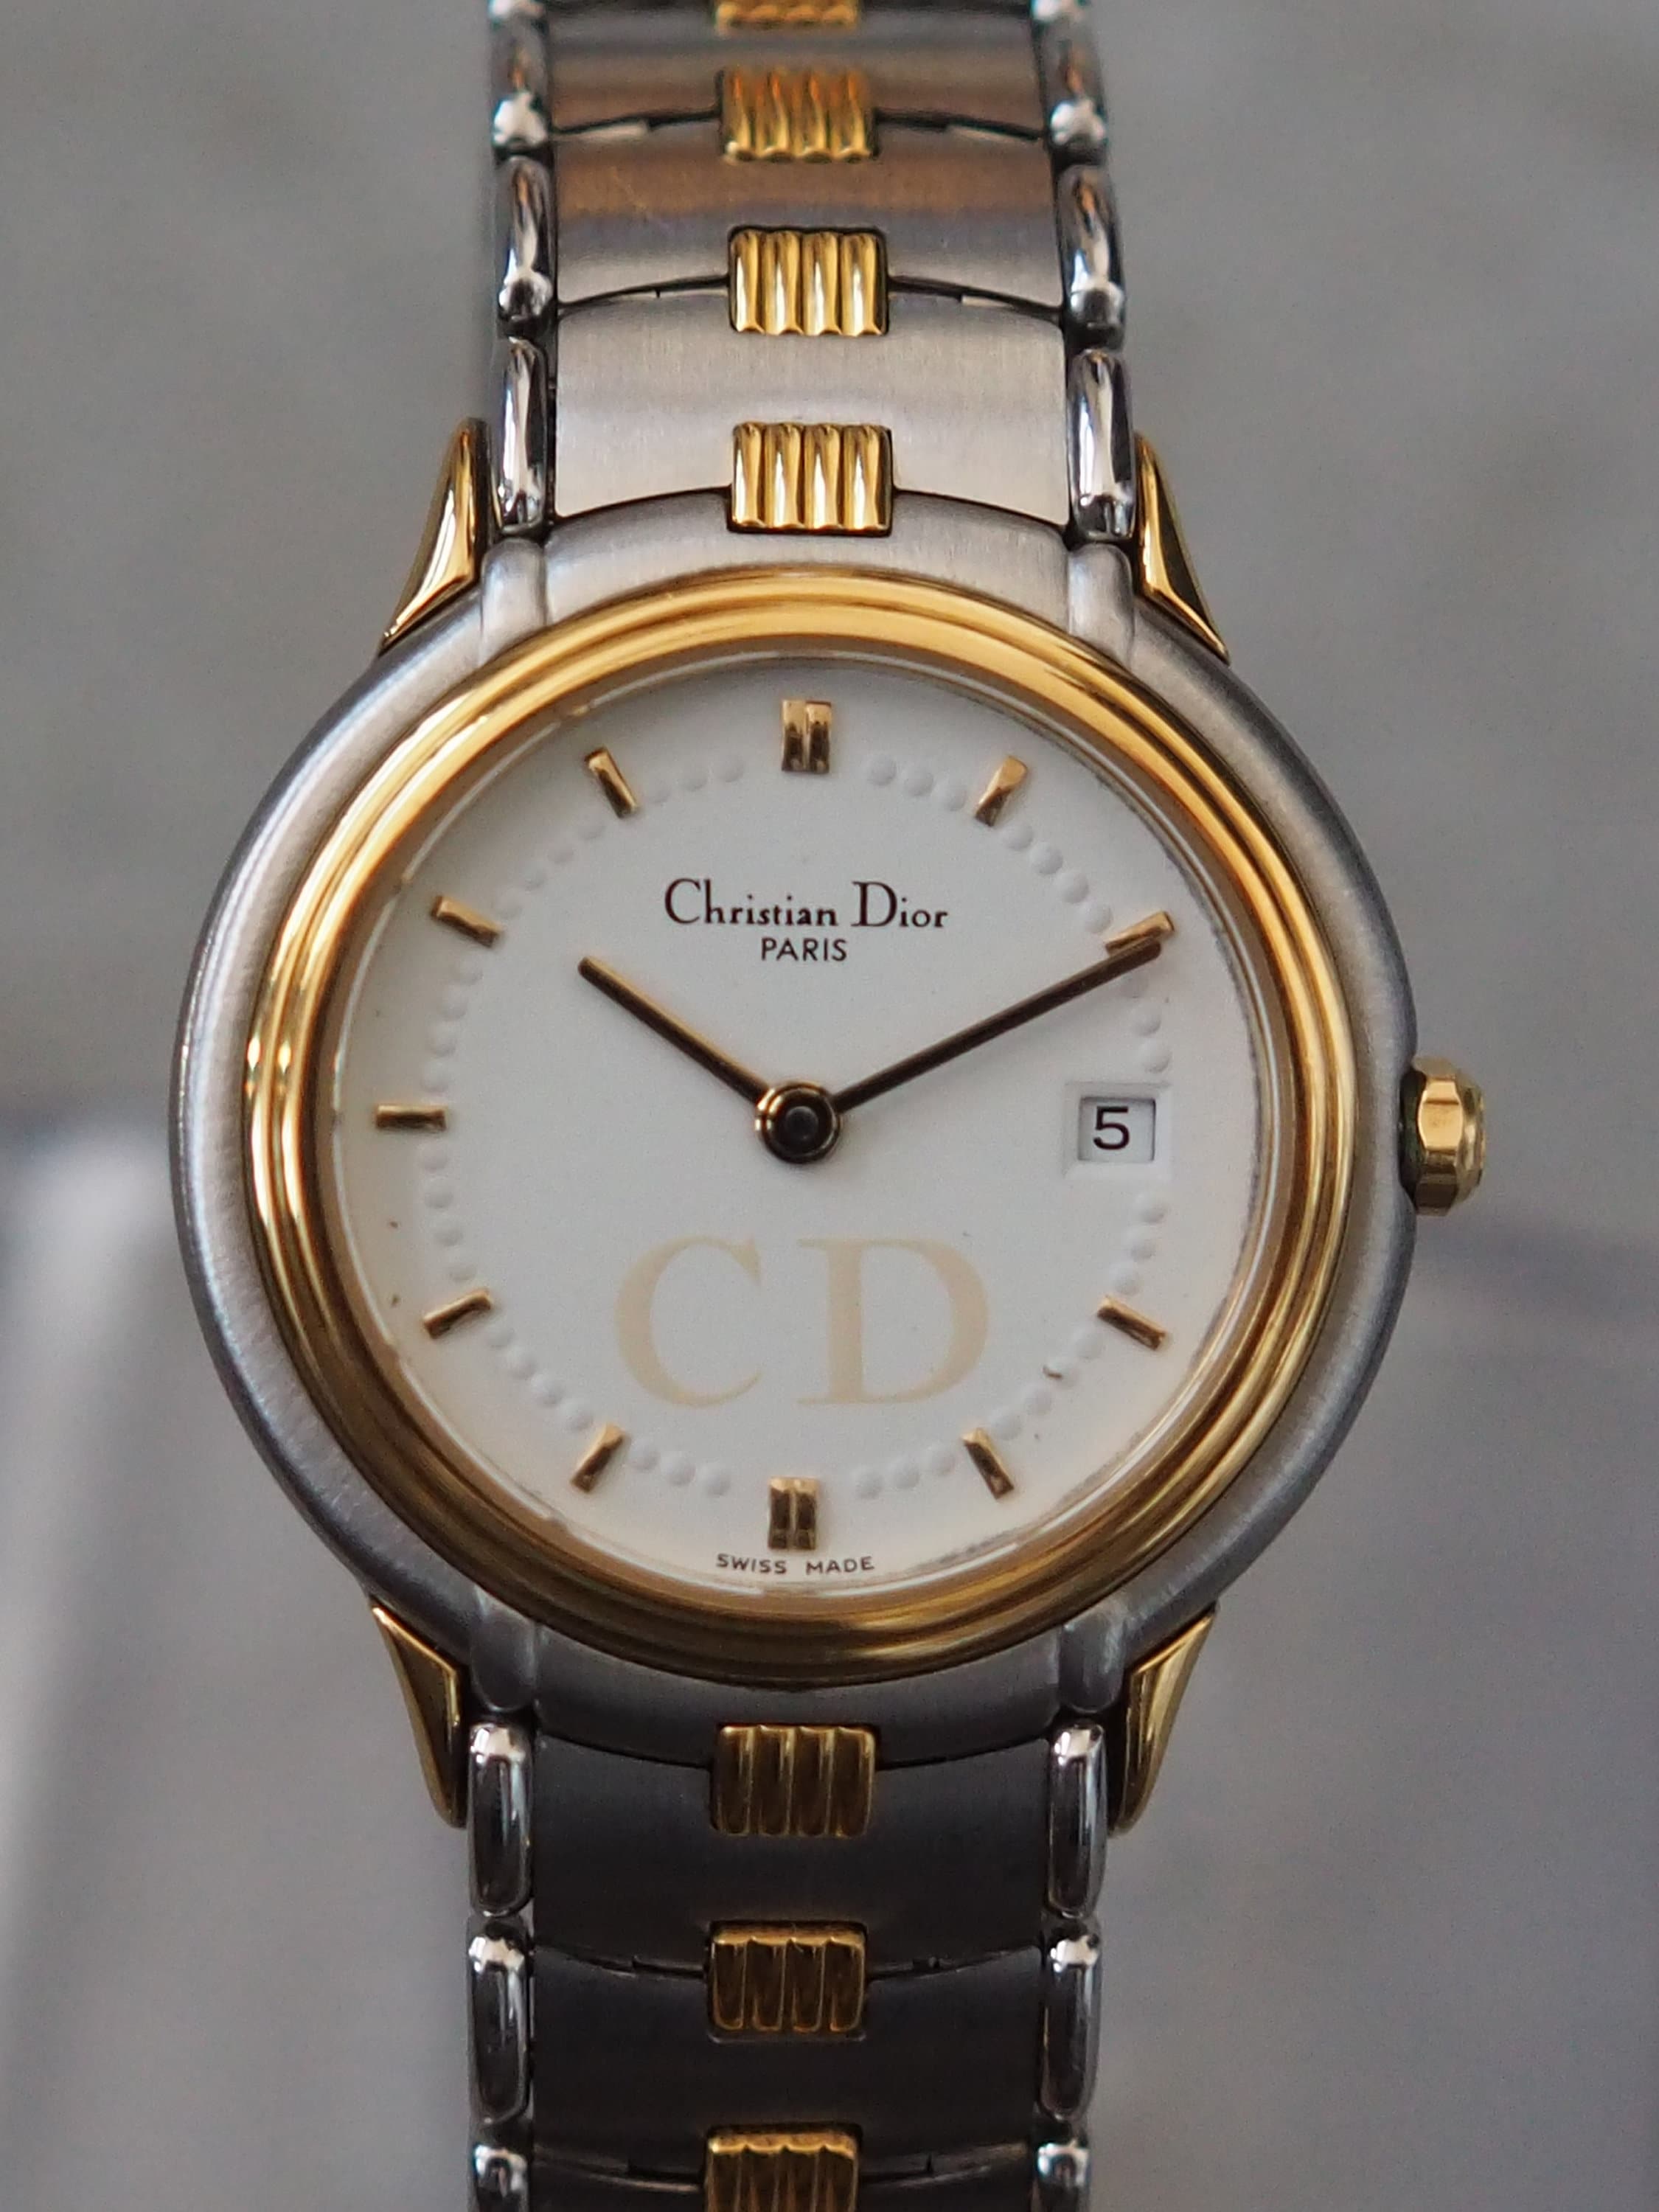 Christian Dior Round Watch Gold Silver Metal Quartz Wristwatch Ladies